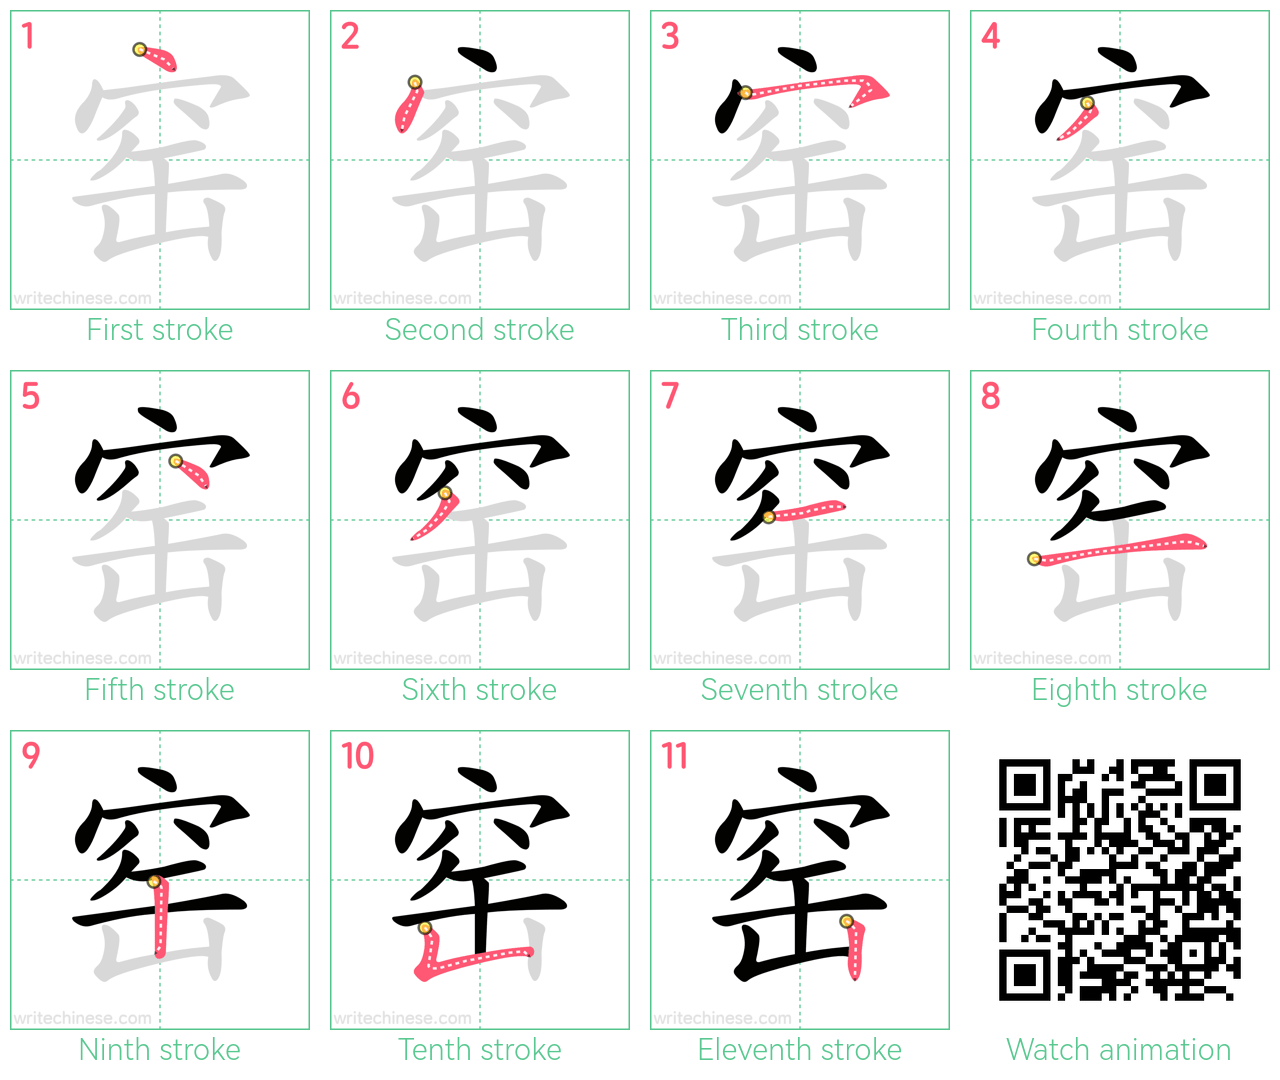 窑 step-by-step stroke order diagrams